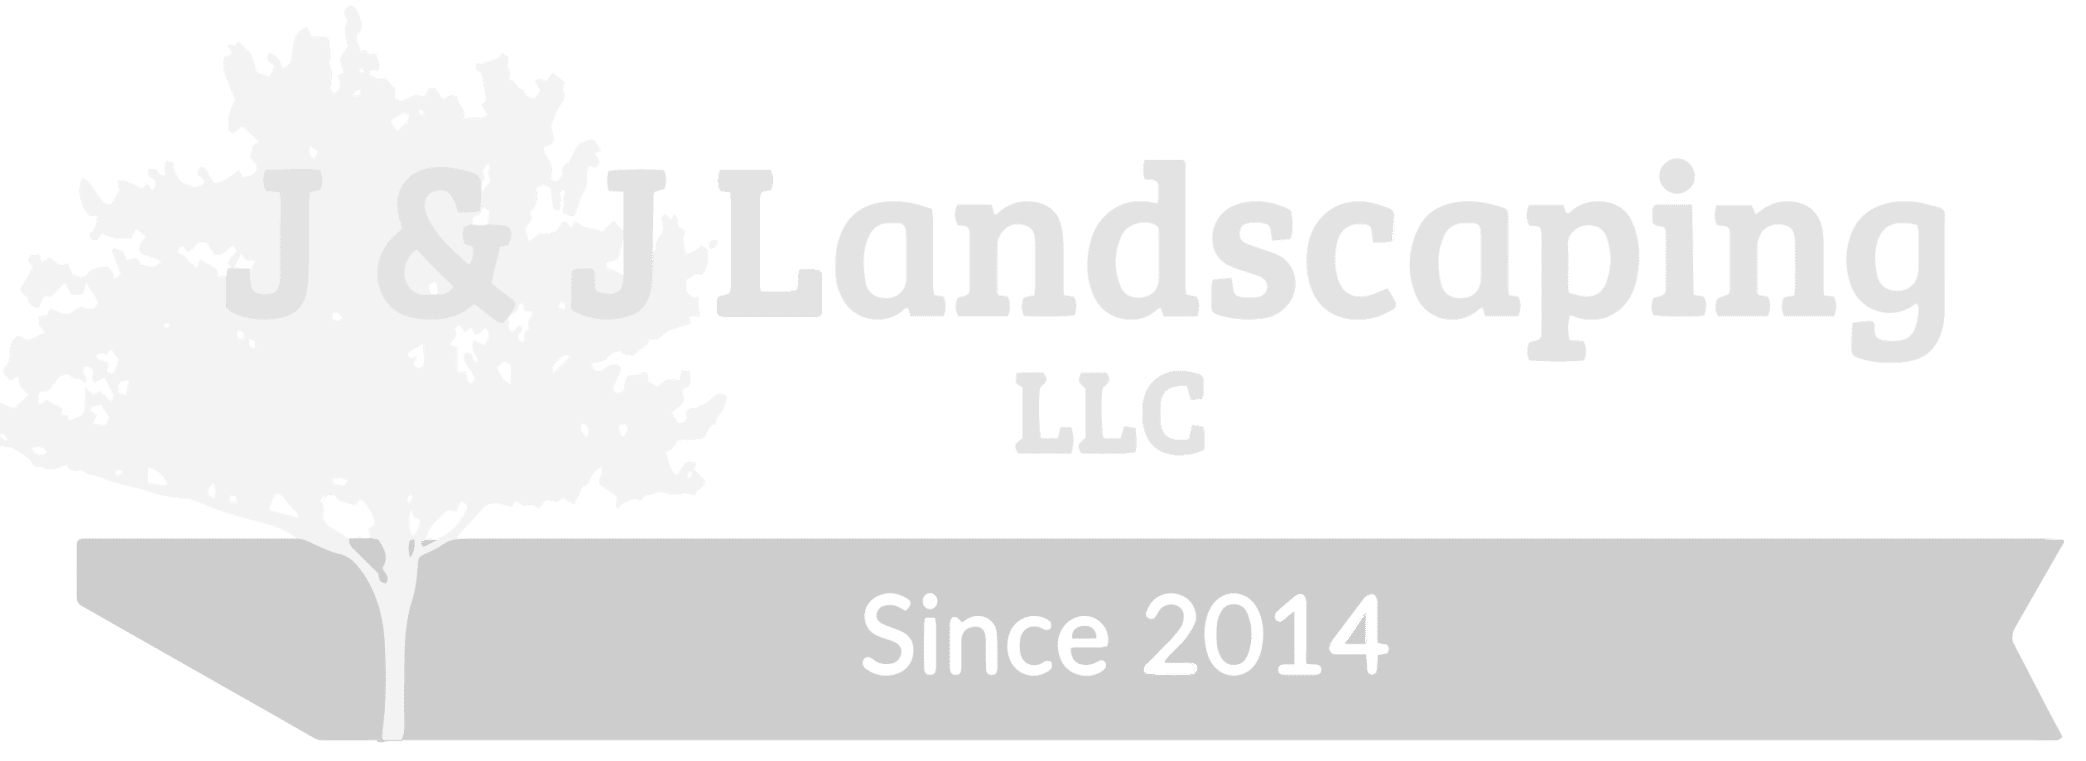 J & J Landscaping company logo light